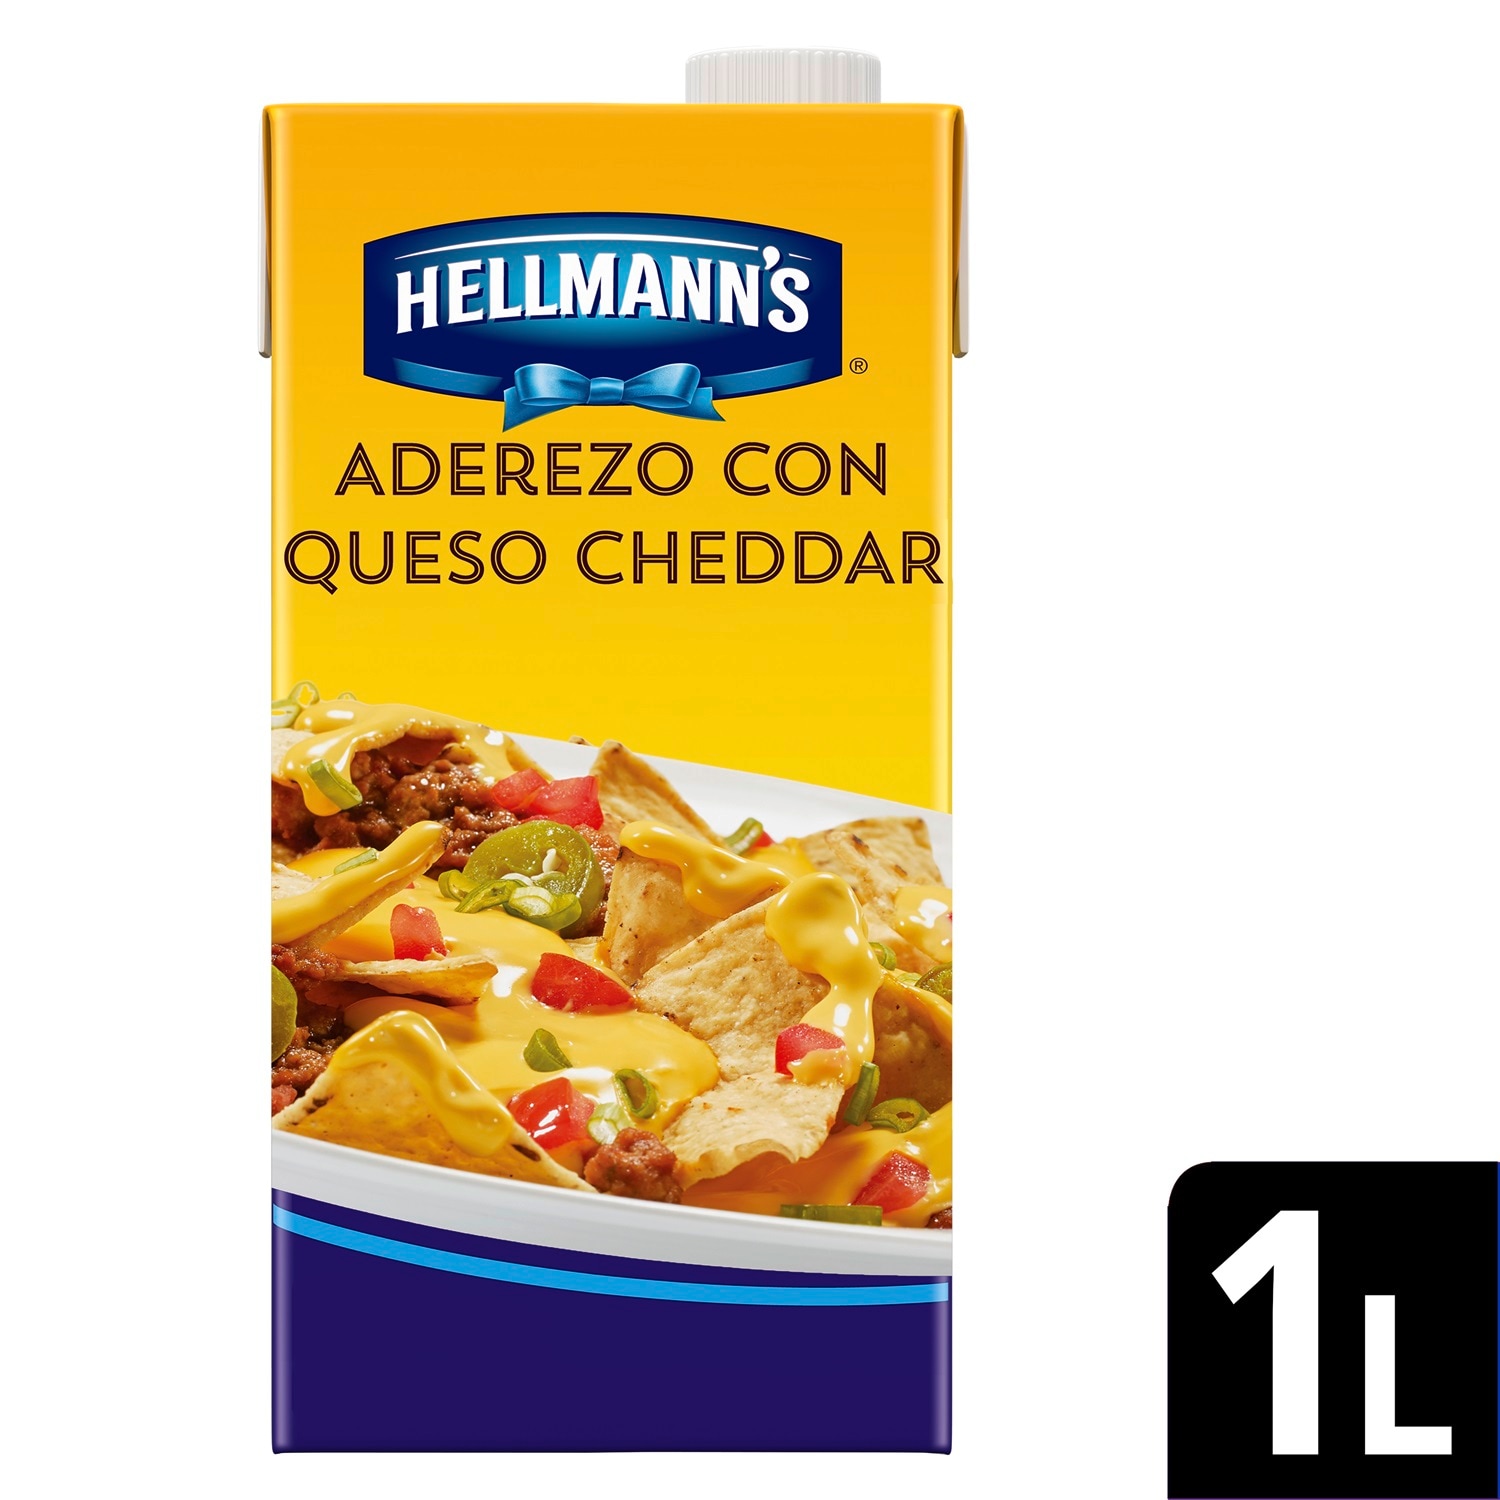 Hellmann's® Queso Cheddar 1 L - Con Hellmann’s® Queso Cheddar puede realizar diversas preparaciones. Es un producto que esta listo para usarse y le sorprenderá por su auténtico sabor a Queso Cheddar.